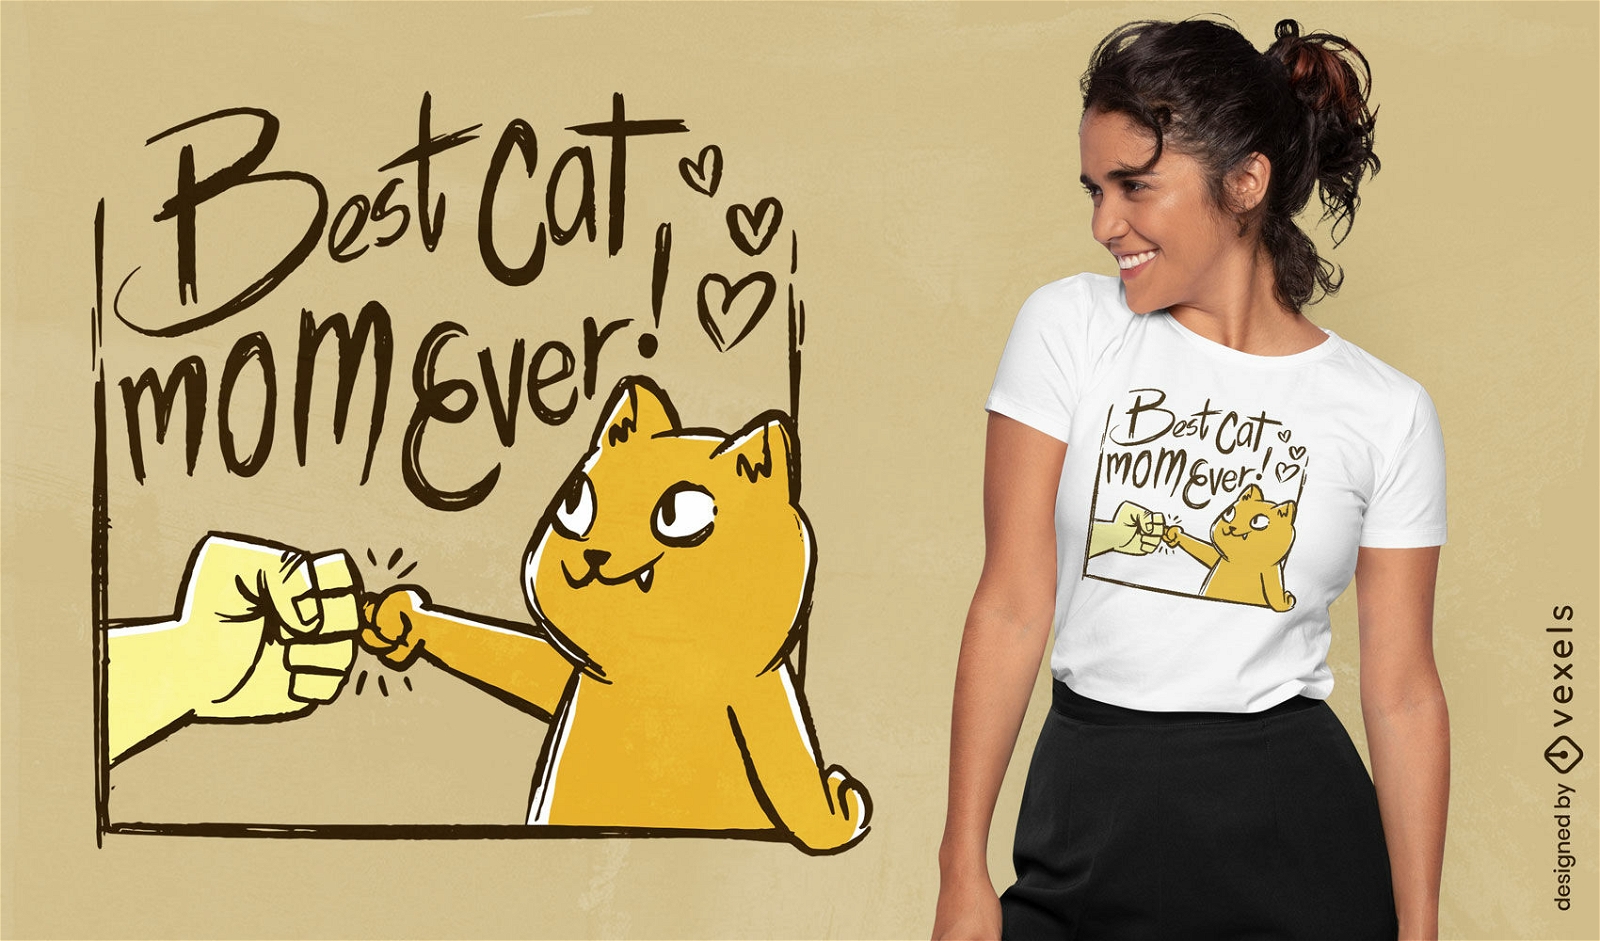 El mejor dise?o de camiseta con cita de mam? gato